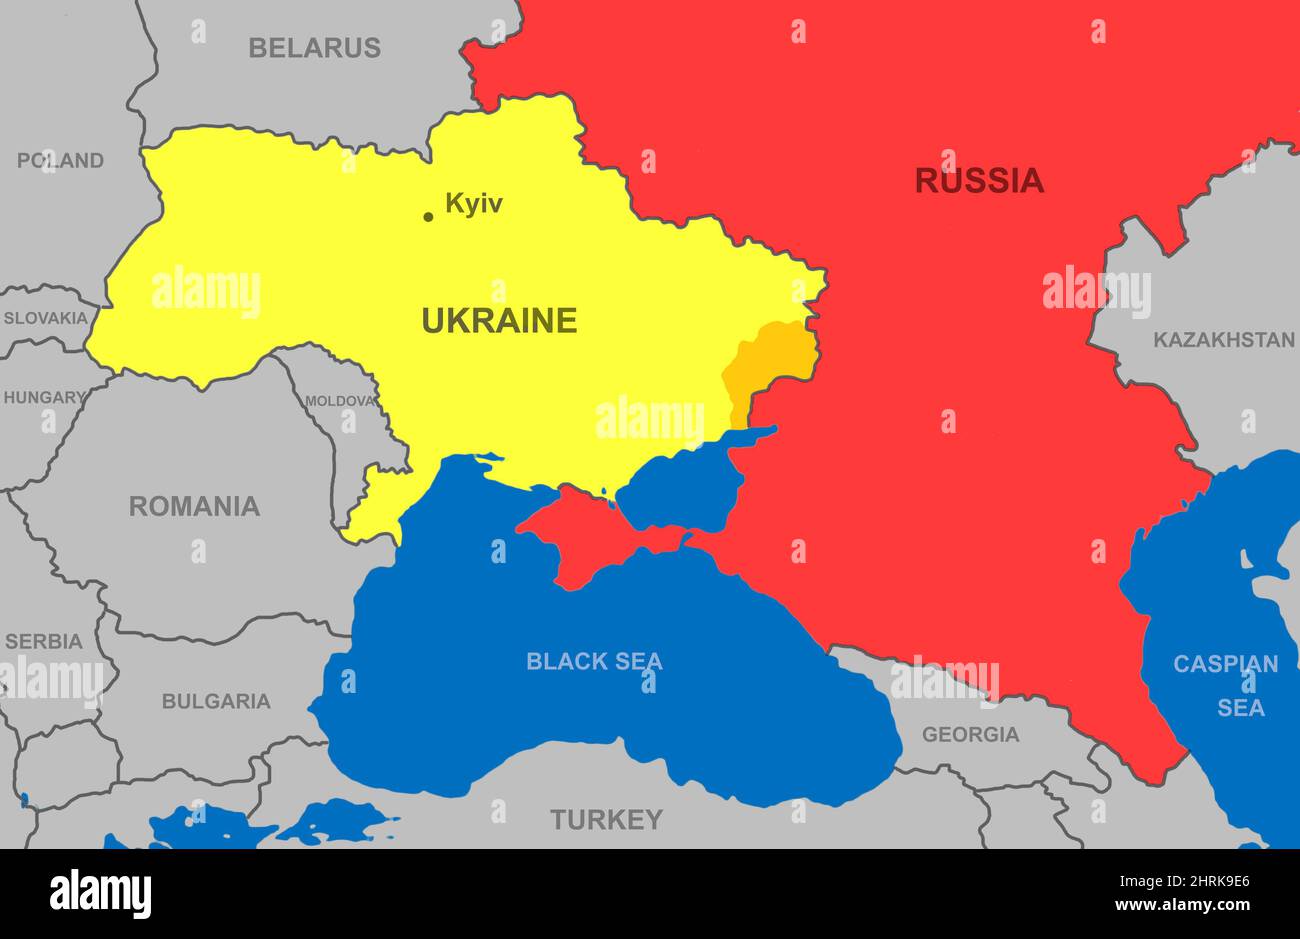 La Russie et l'Ukraine sur la carte de l'Europe. Territoire ukrainien avec région de Donbass près de la frontière russe sur la carte politique. Bélarus, Pologne et autres pays Banque D'Images